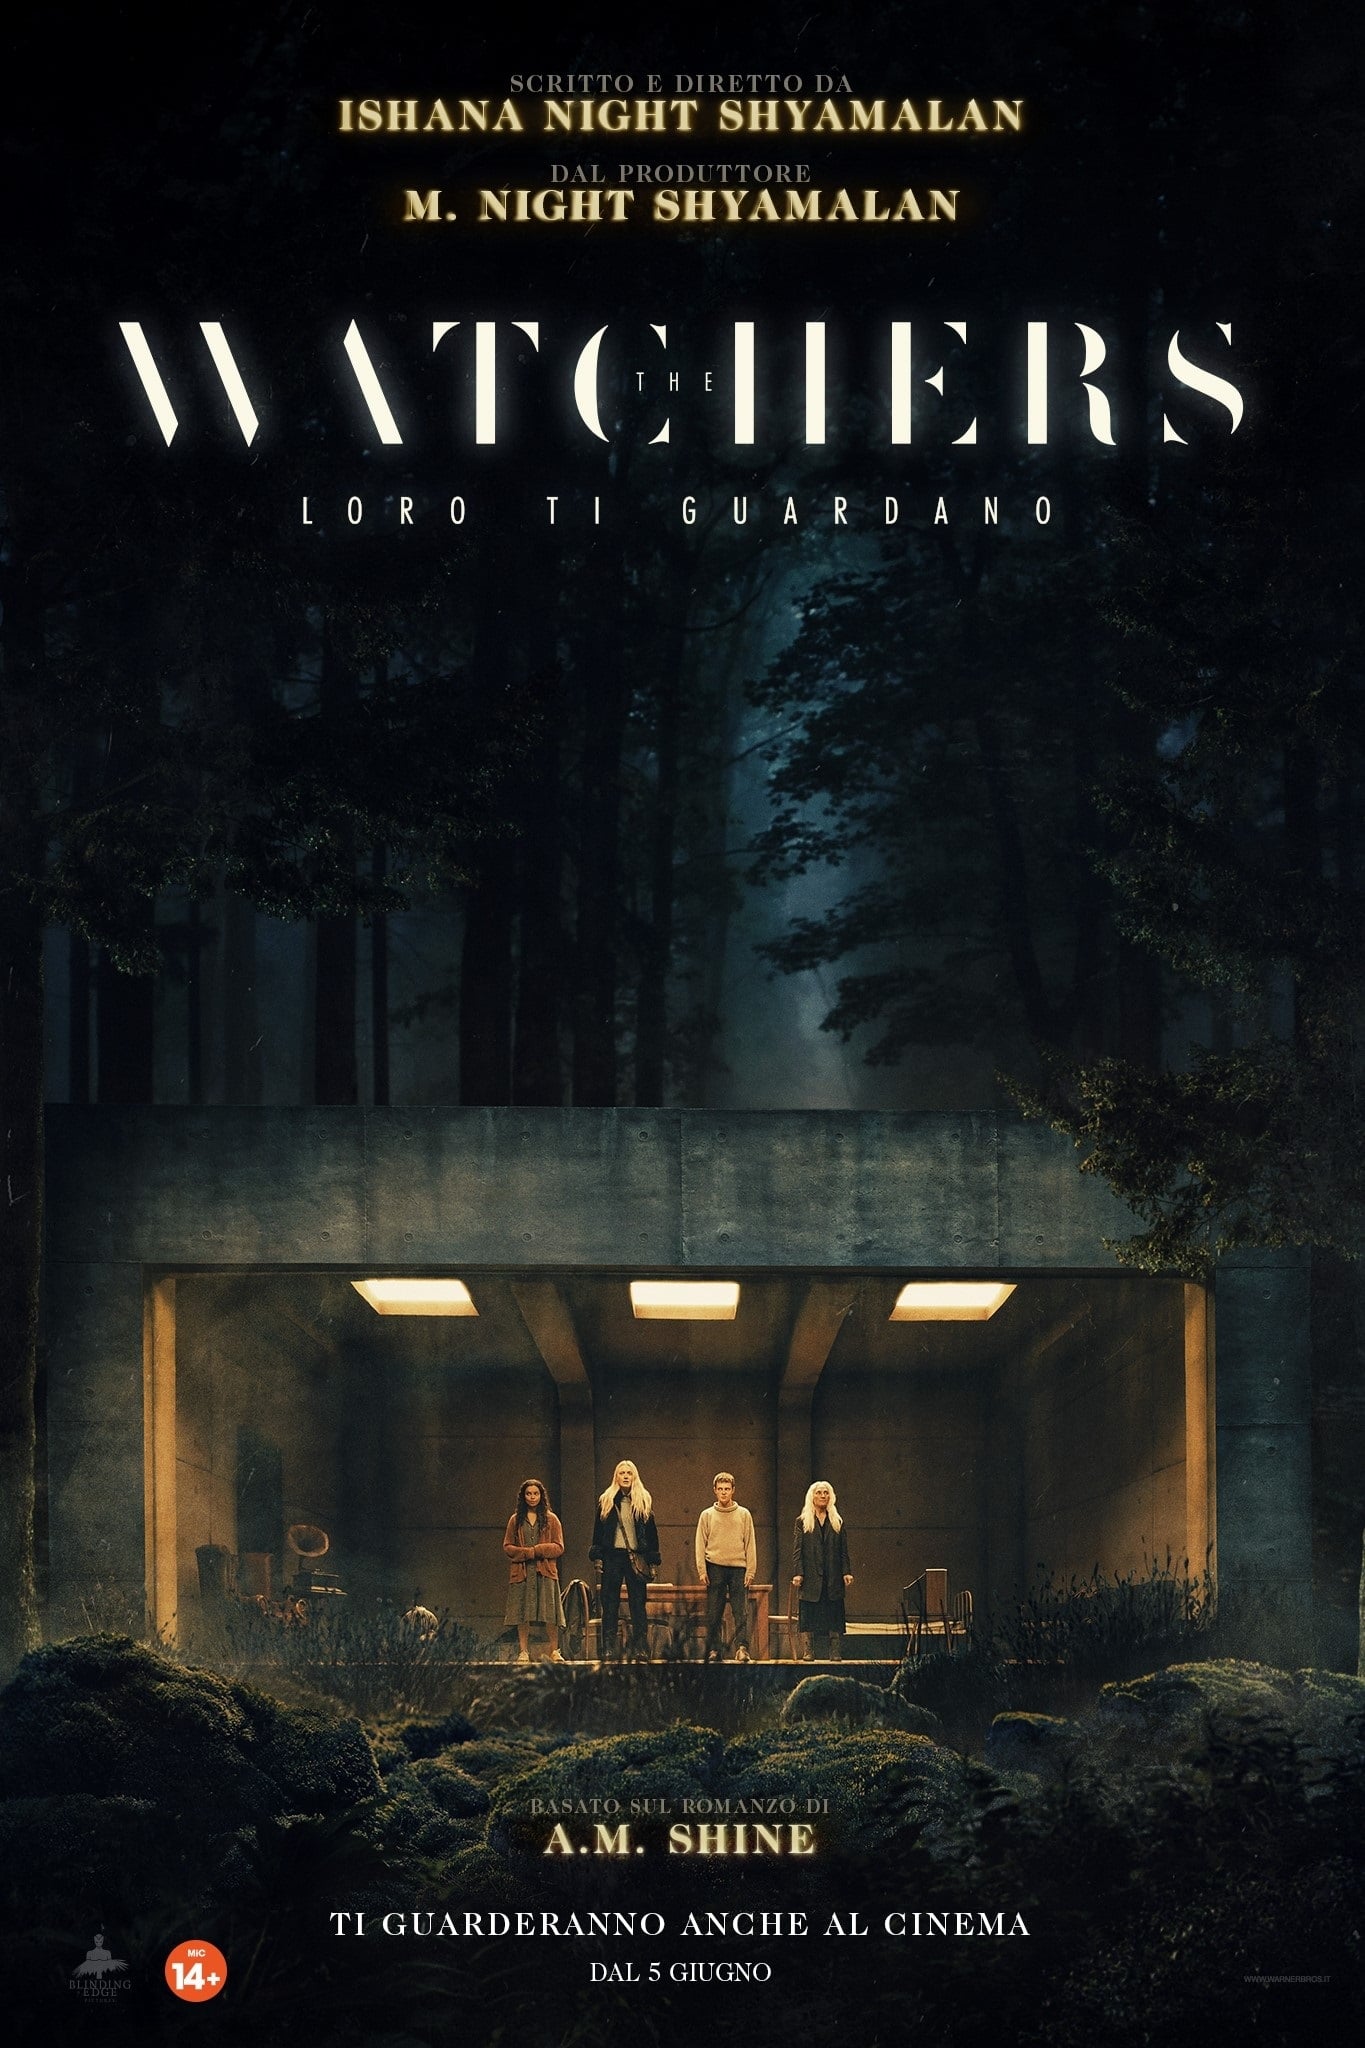 The Watchers - Loro ti guardano film